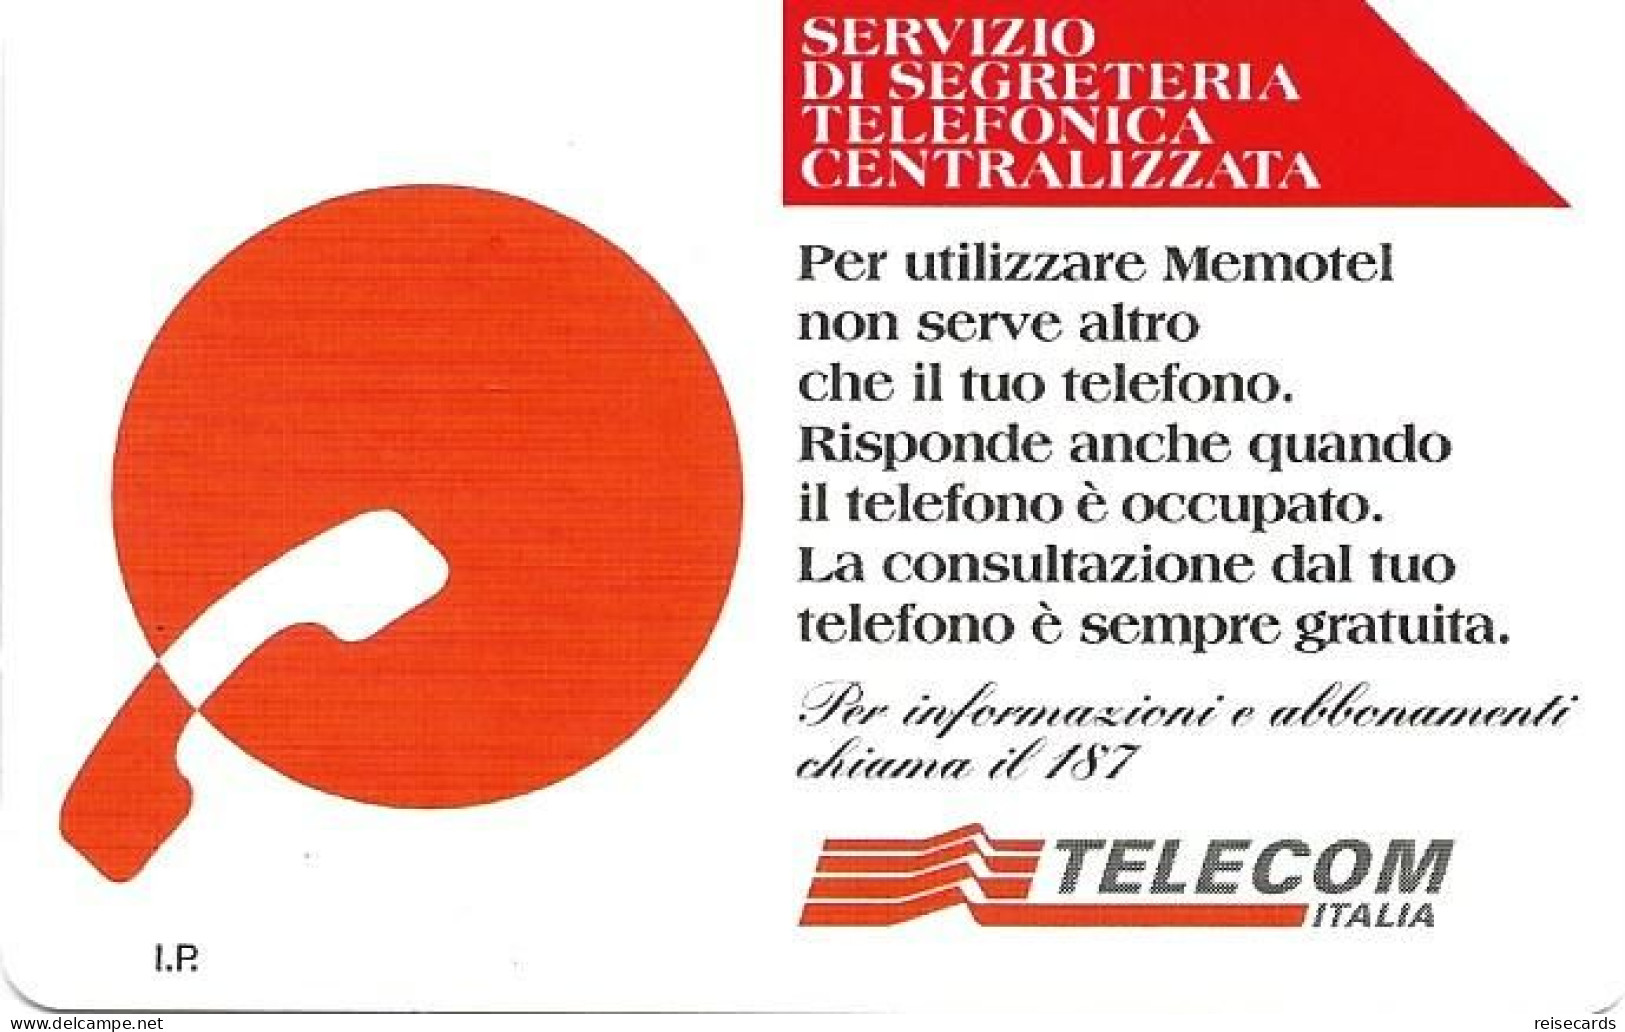 Italy: Telecom Italia - Servizio Di Segreteria Telefonica Centralizzata - Públicas  Publicitarias